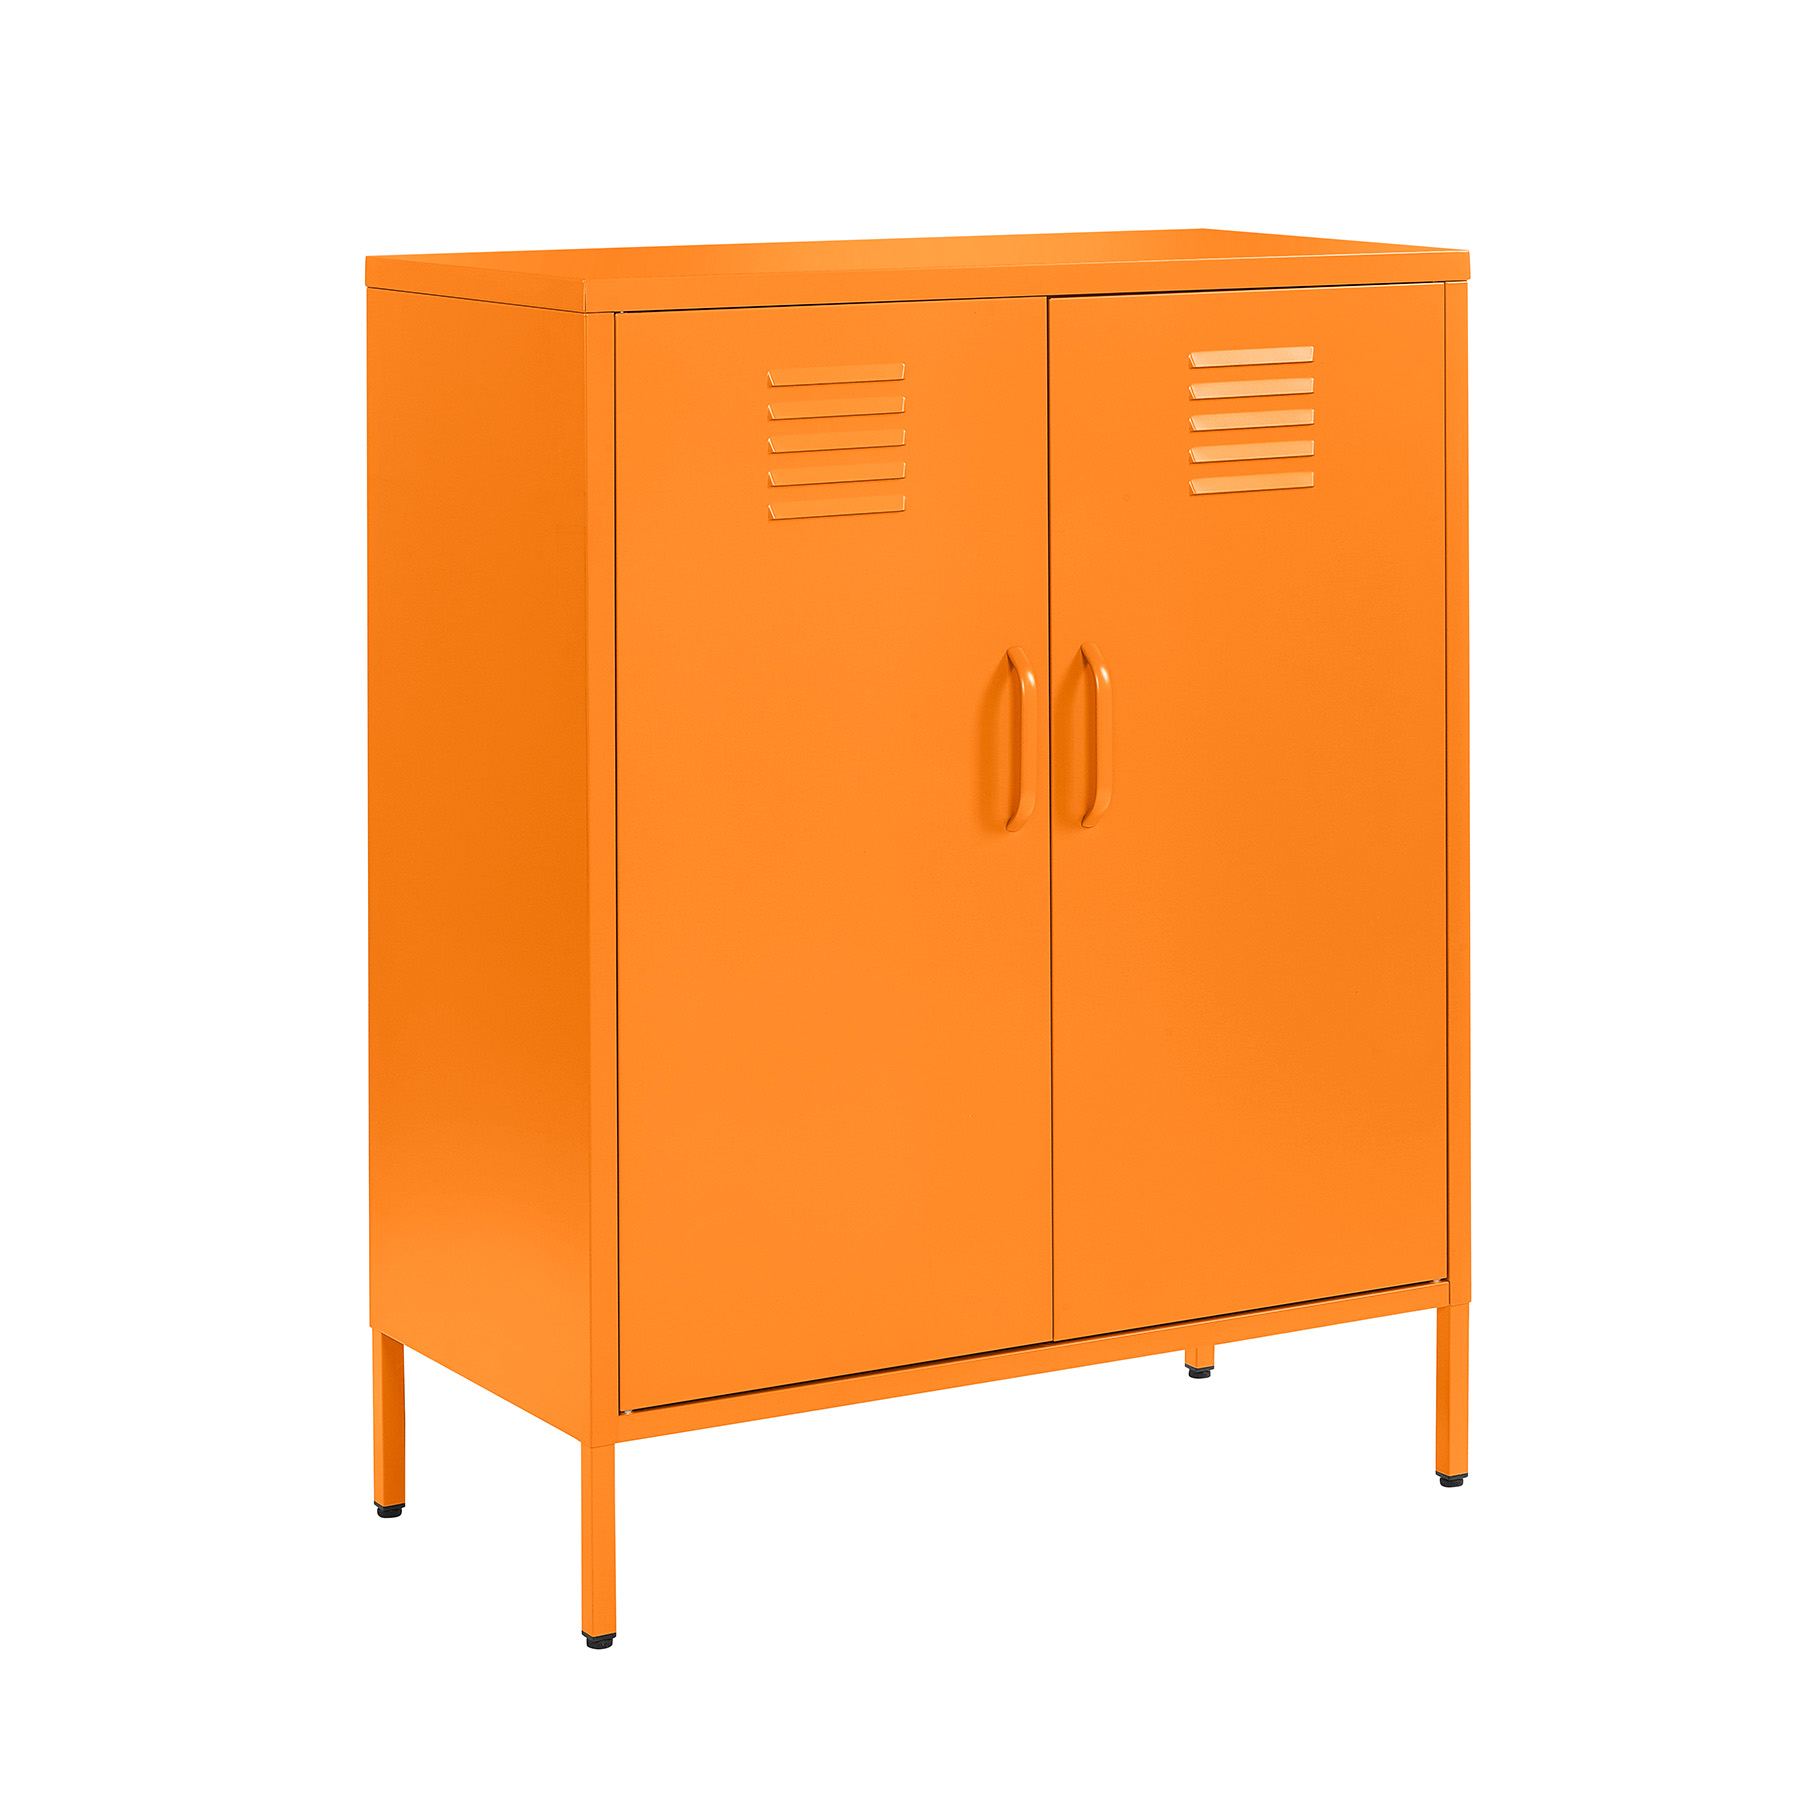 st 01 orange 2 door metal storage cabinet 1010mm